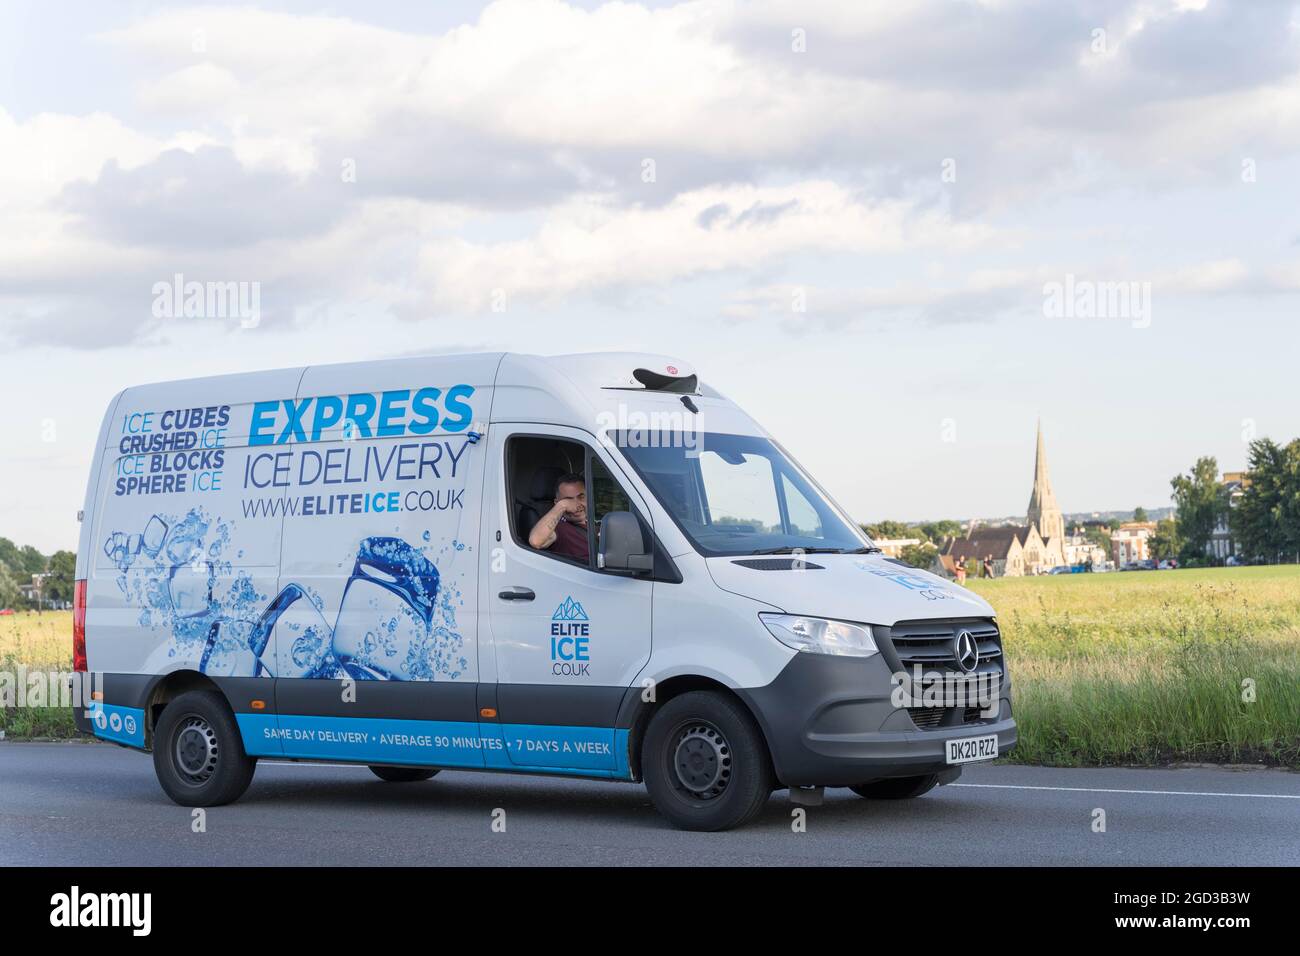 Eiswürfel fahren unterwegs zur Lieferung A2, London Greenwich England  Stockfotografie - Alamy